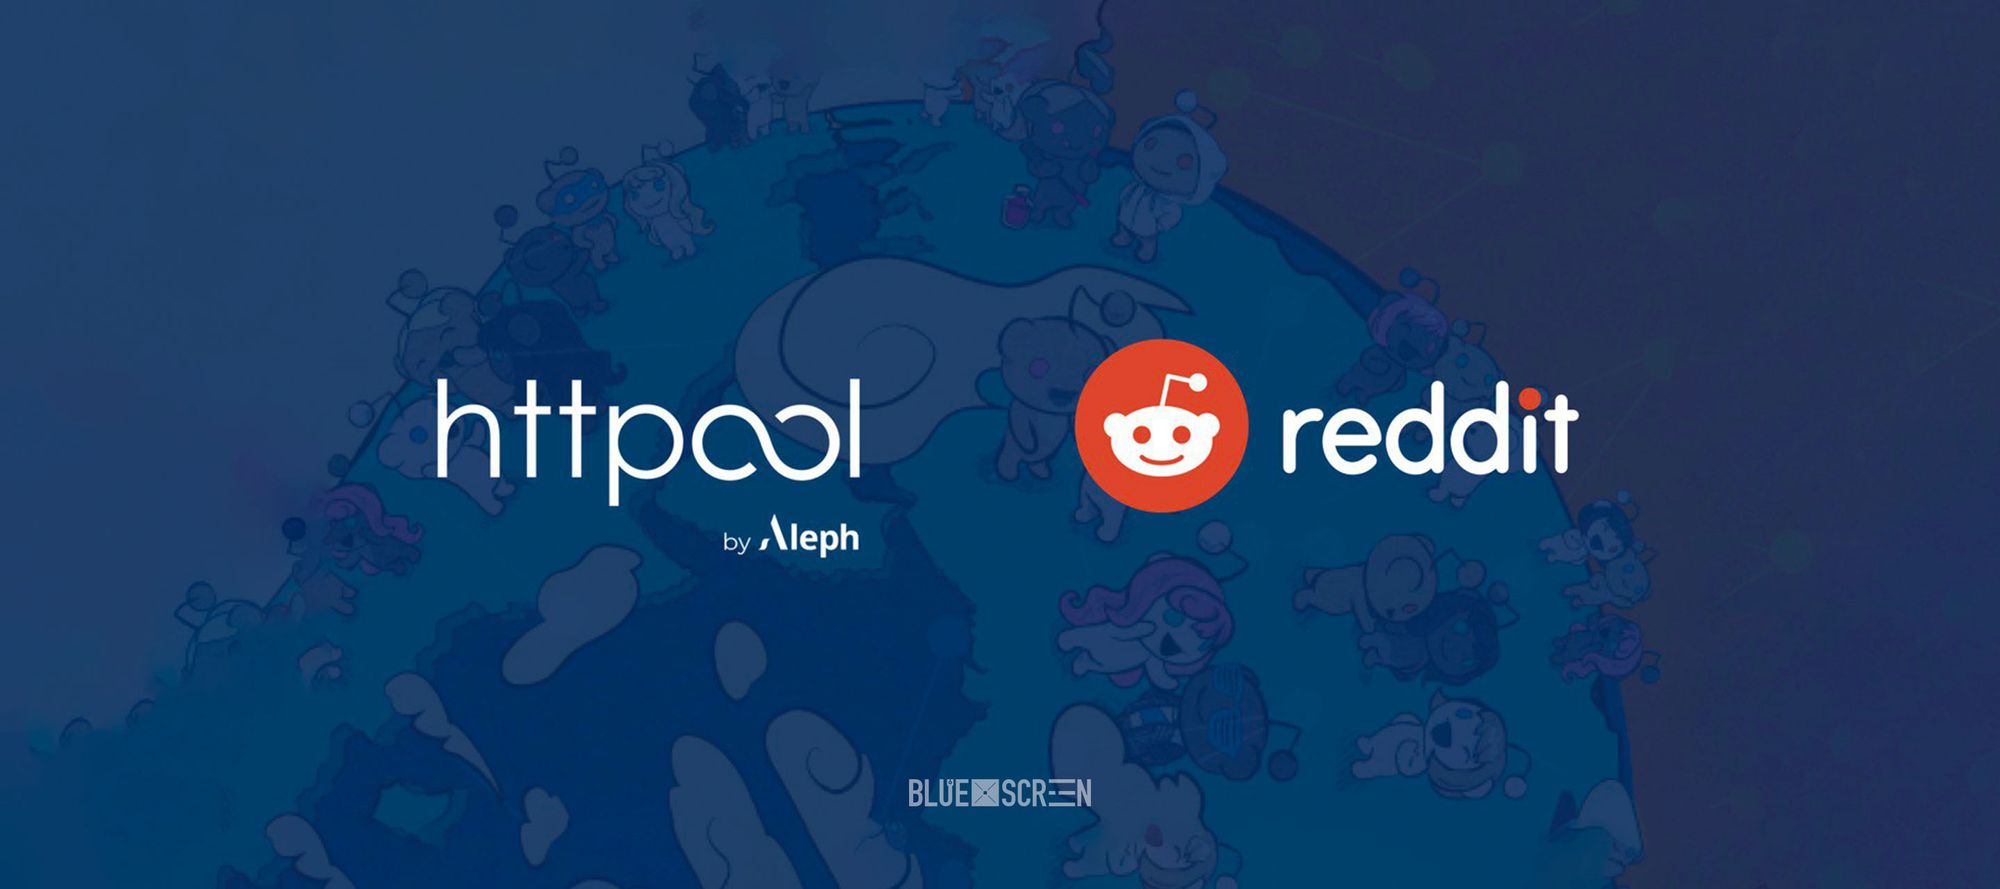 Reddit и Httpool выходят на рекламный рынок Центральной Азии